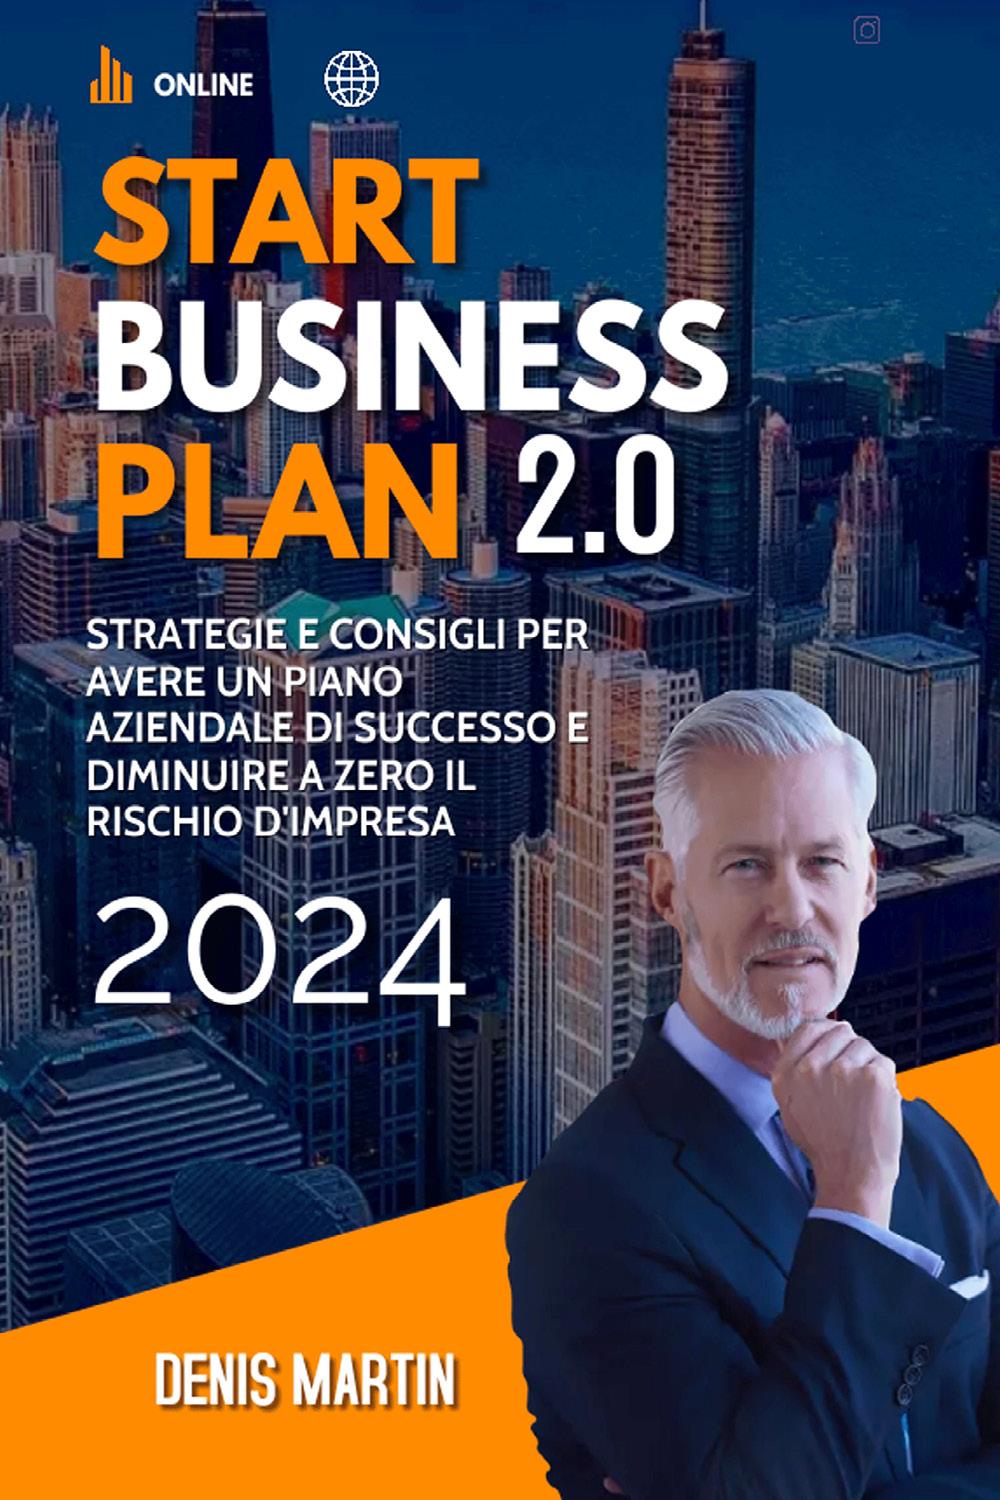 Start Business Plan 2.0: Strategie e Consigli Per Avere Un Piano Aziendale Di Successo e Diminuire a Zero il Rischio D'Impresa